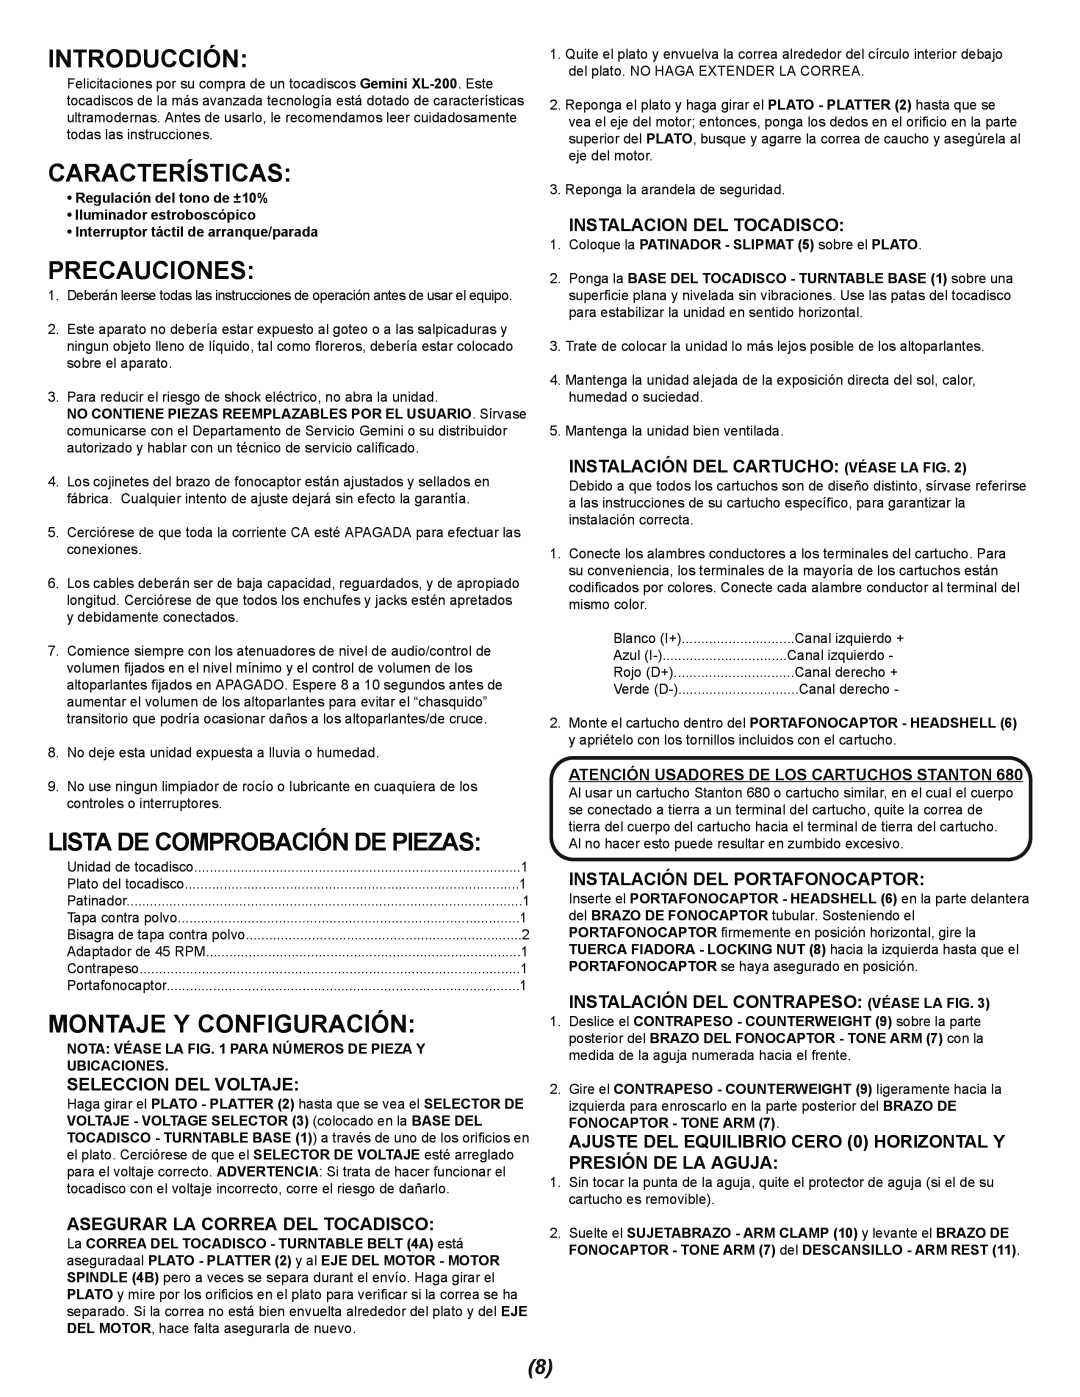 Gemini XL-200 manual Introducción, Características, Precauciones, Montaje Y Configuración, Seleccion Del Voltaje 